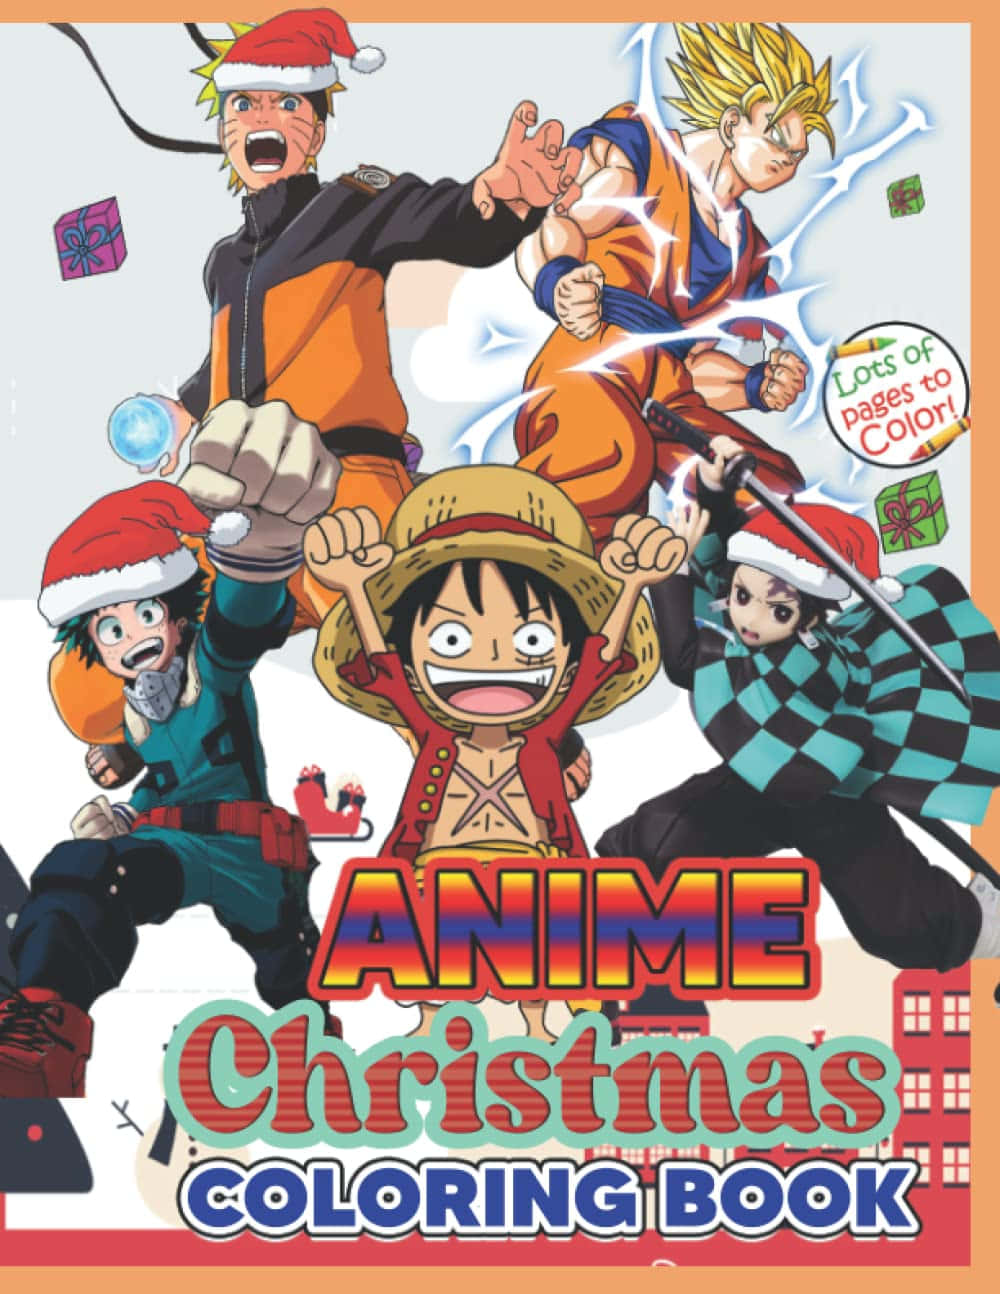 Kommein Weihnachtsstimmung Mit Dieser Festlichen Anime-weihnachtsszene!